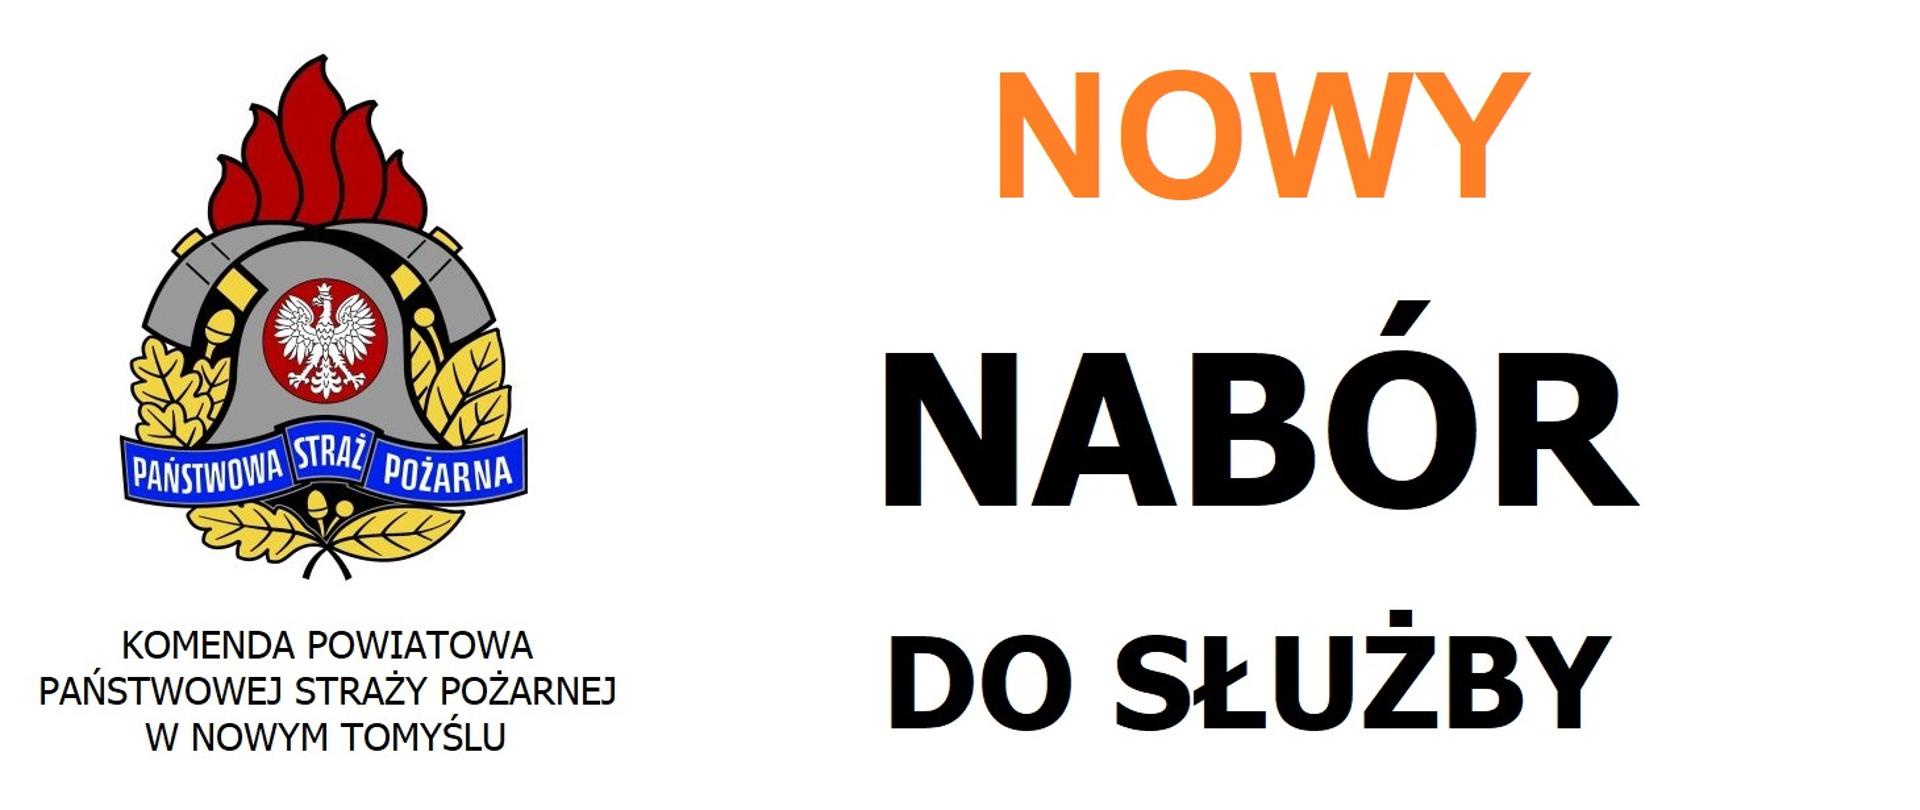 NOWY Nabór